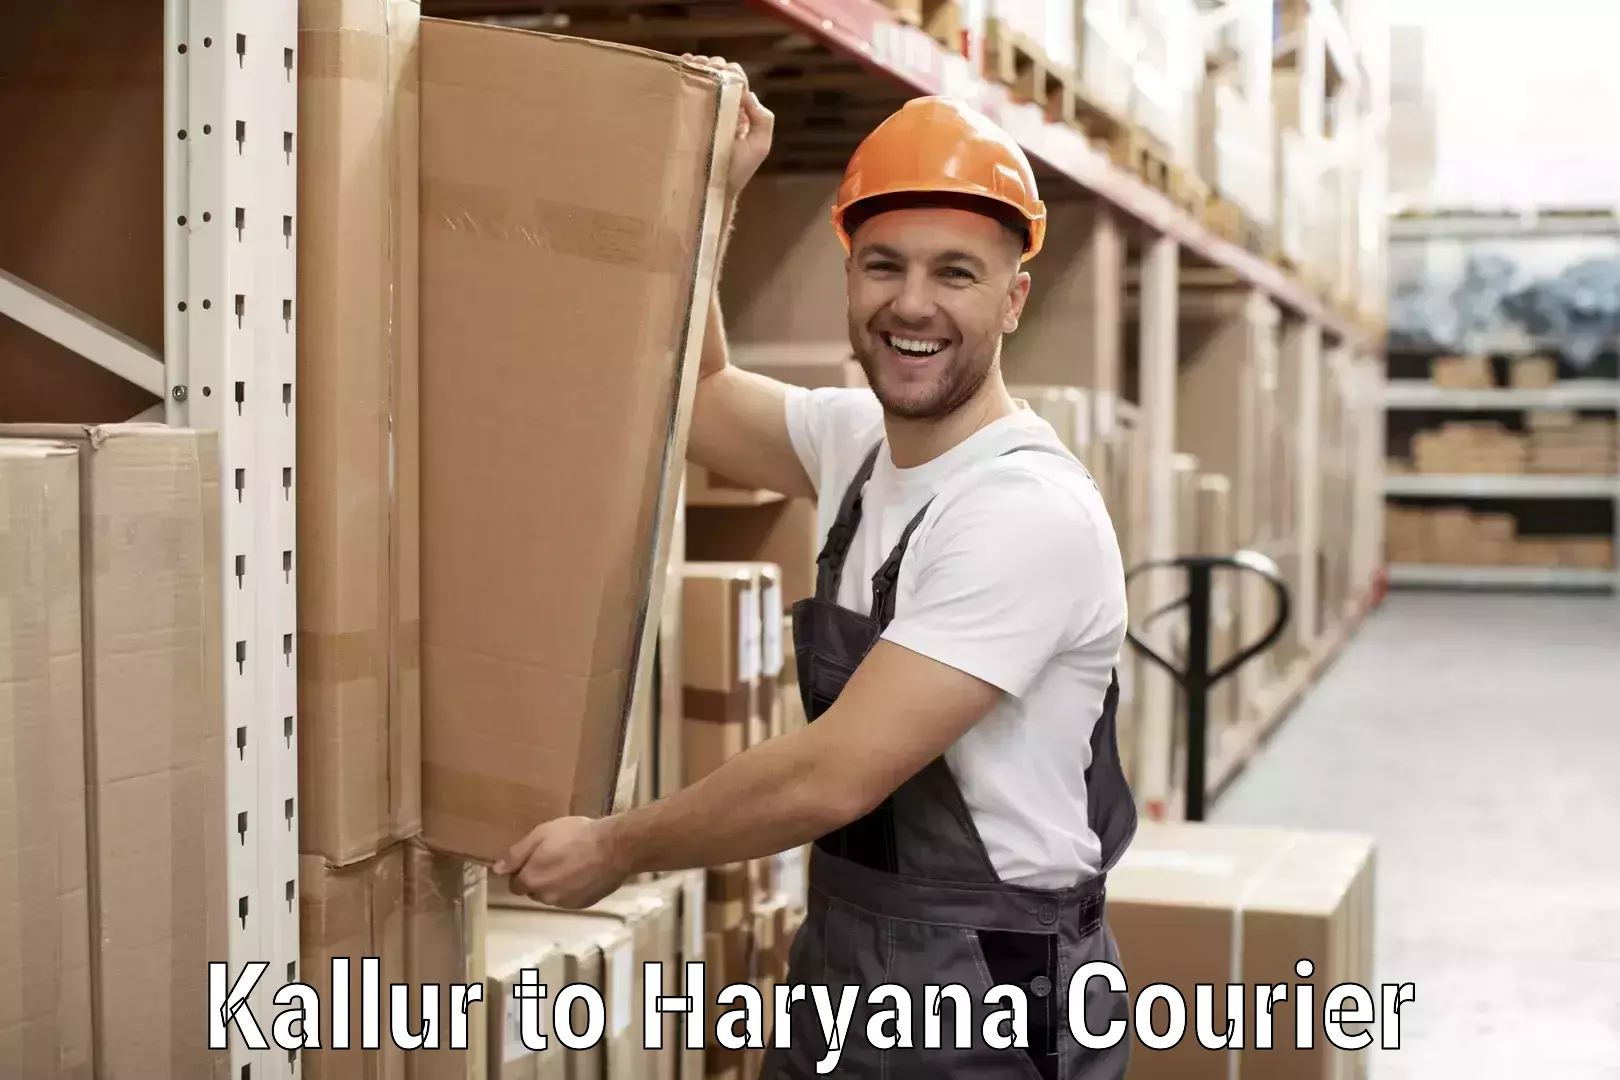 Courier service efficiency Kallur to Hansi